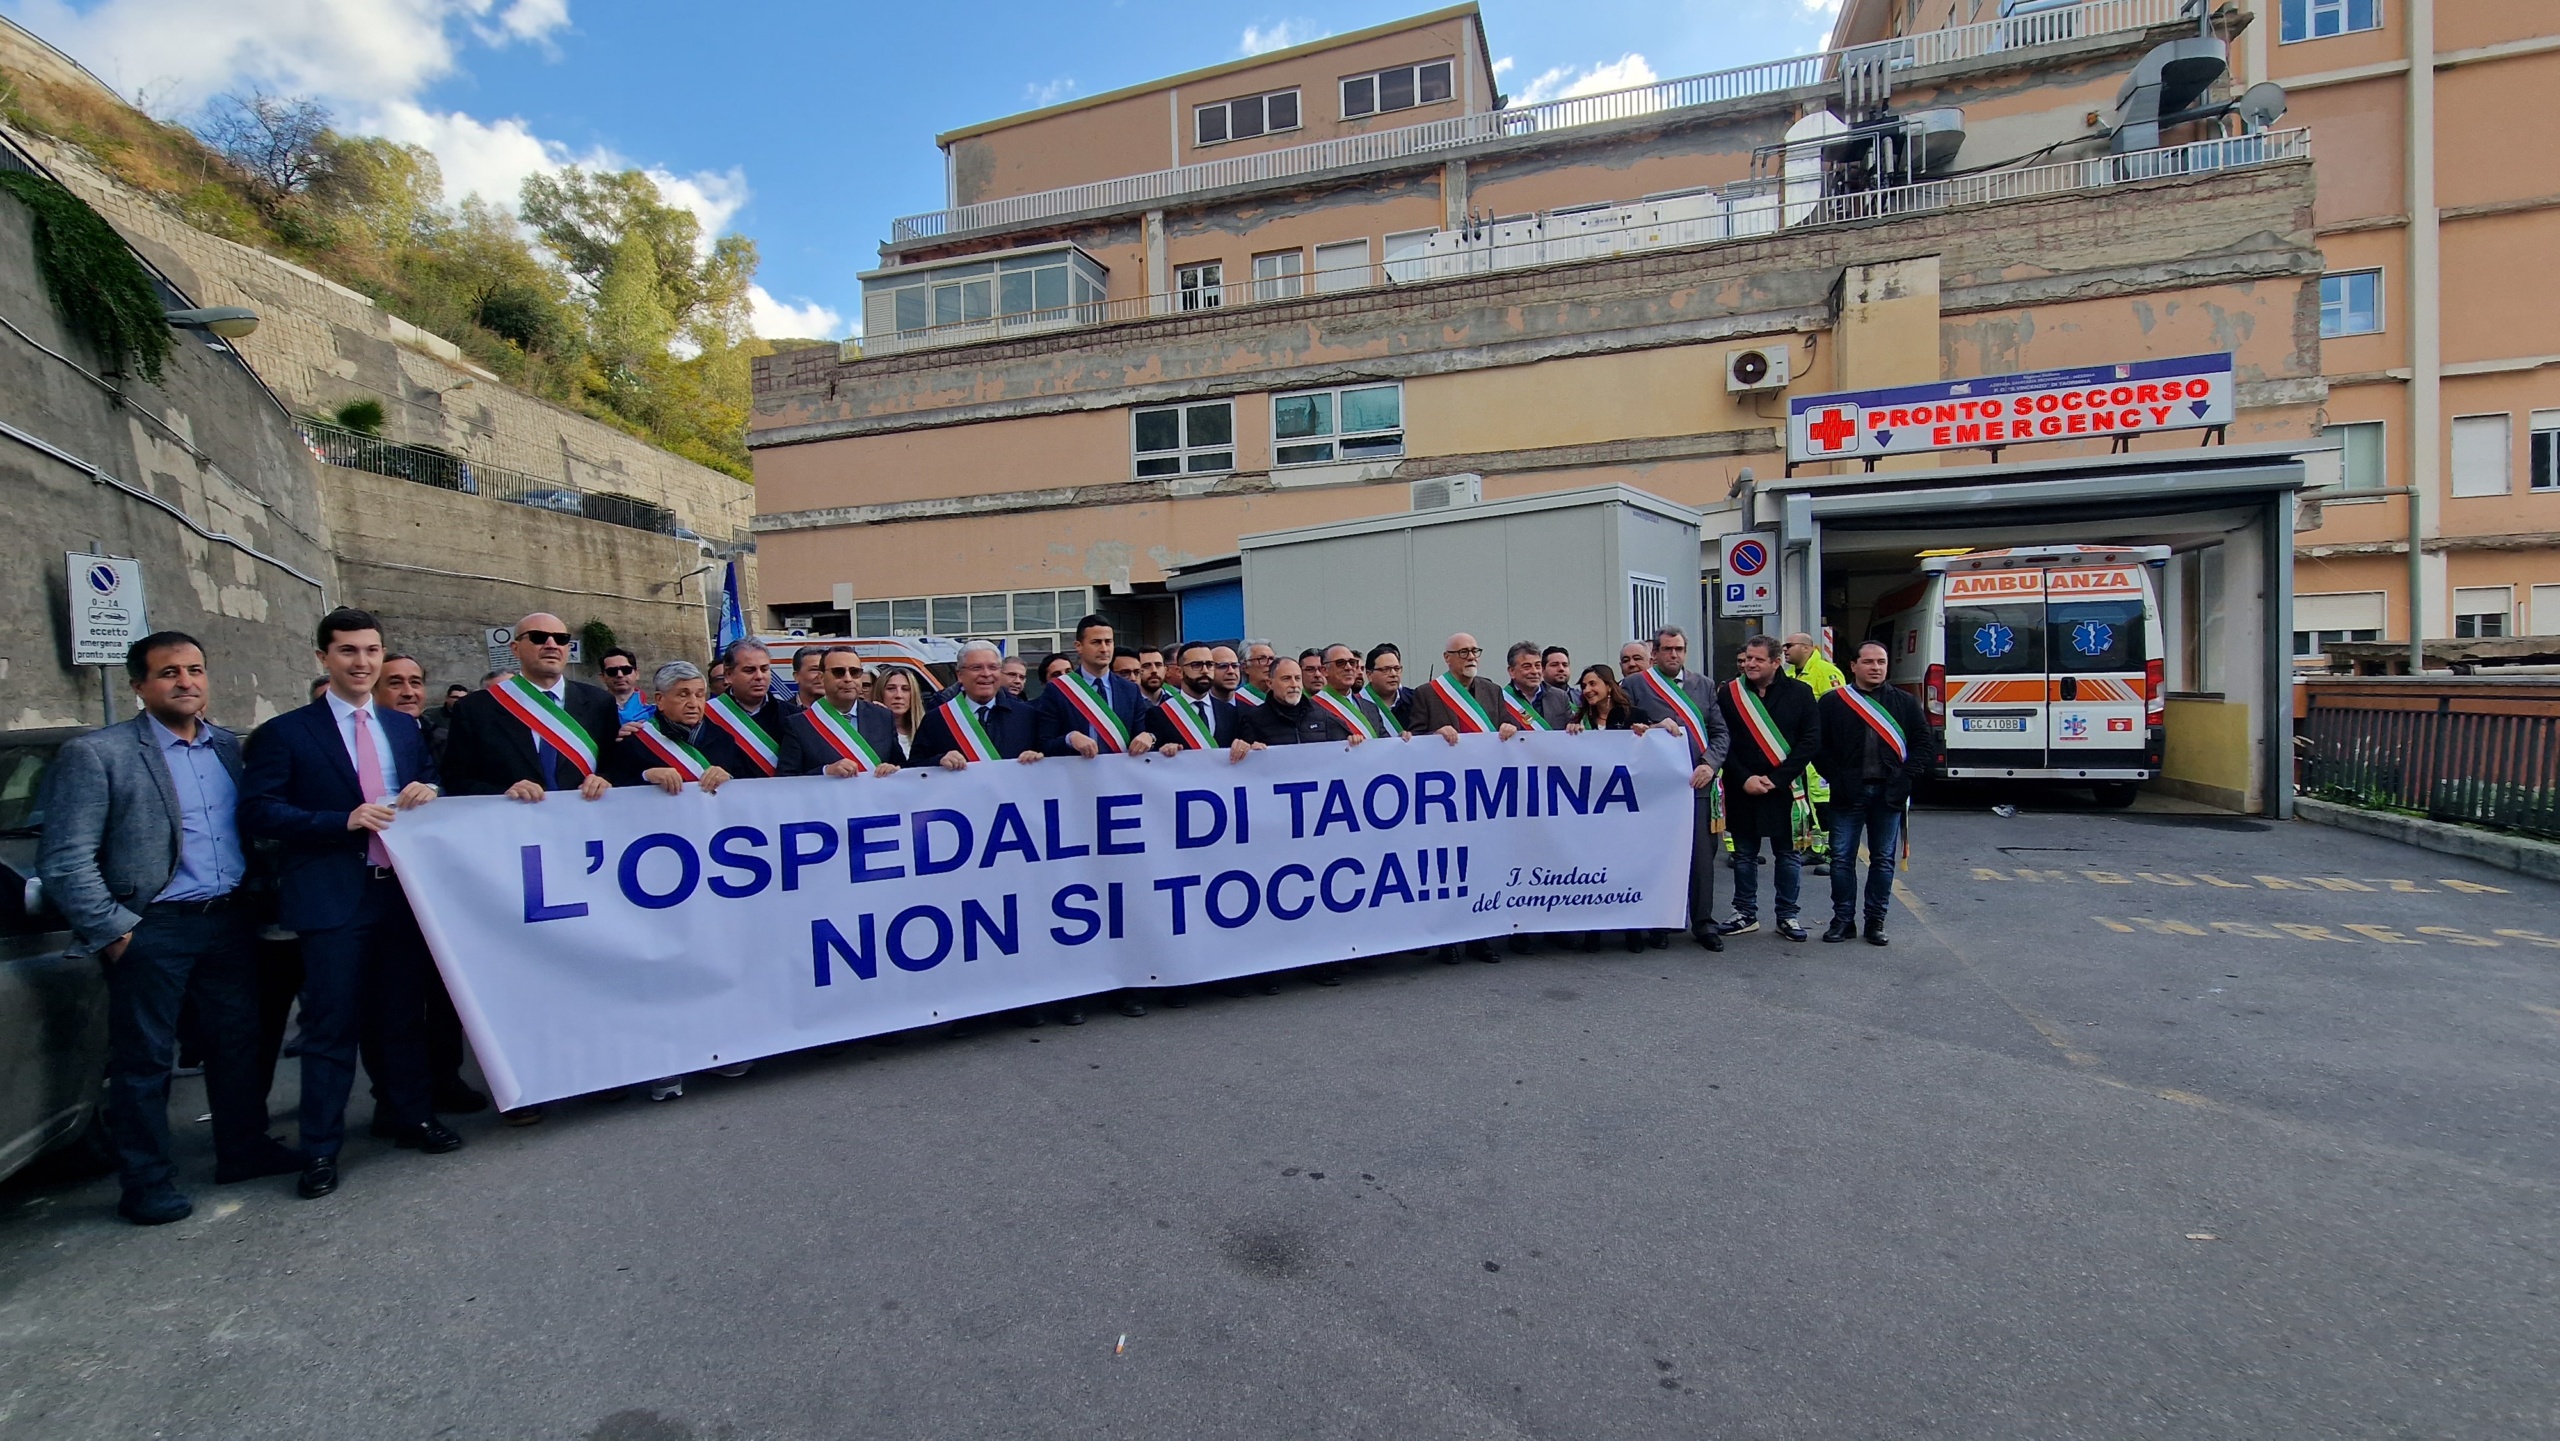 Sindaci del distretto sanitario D32: “Giù le mani dall’ospedale di Taormina”